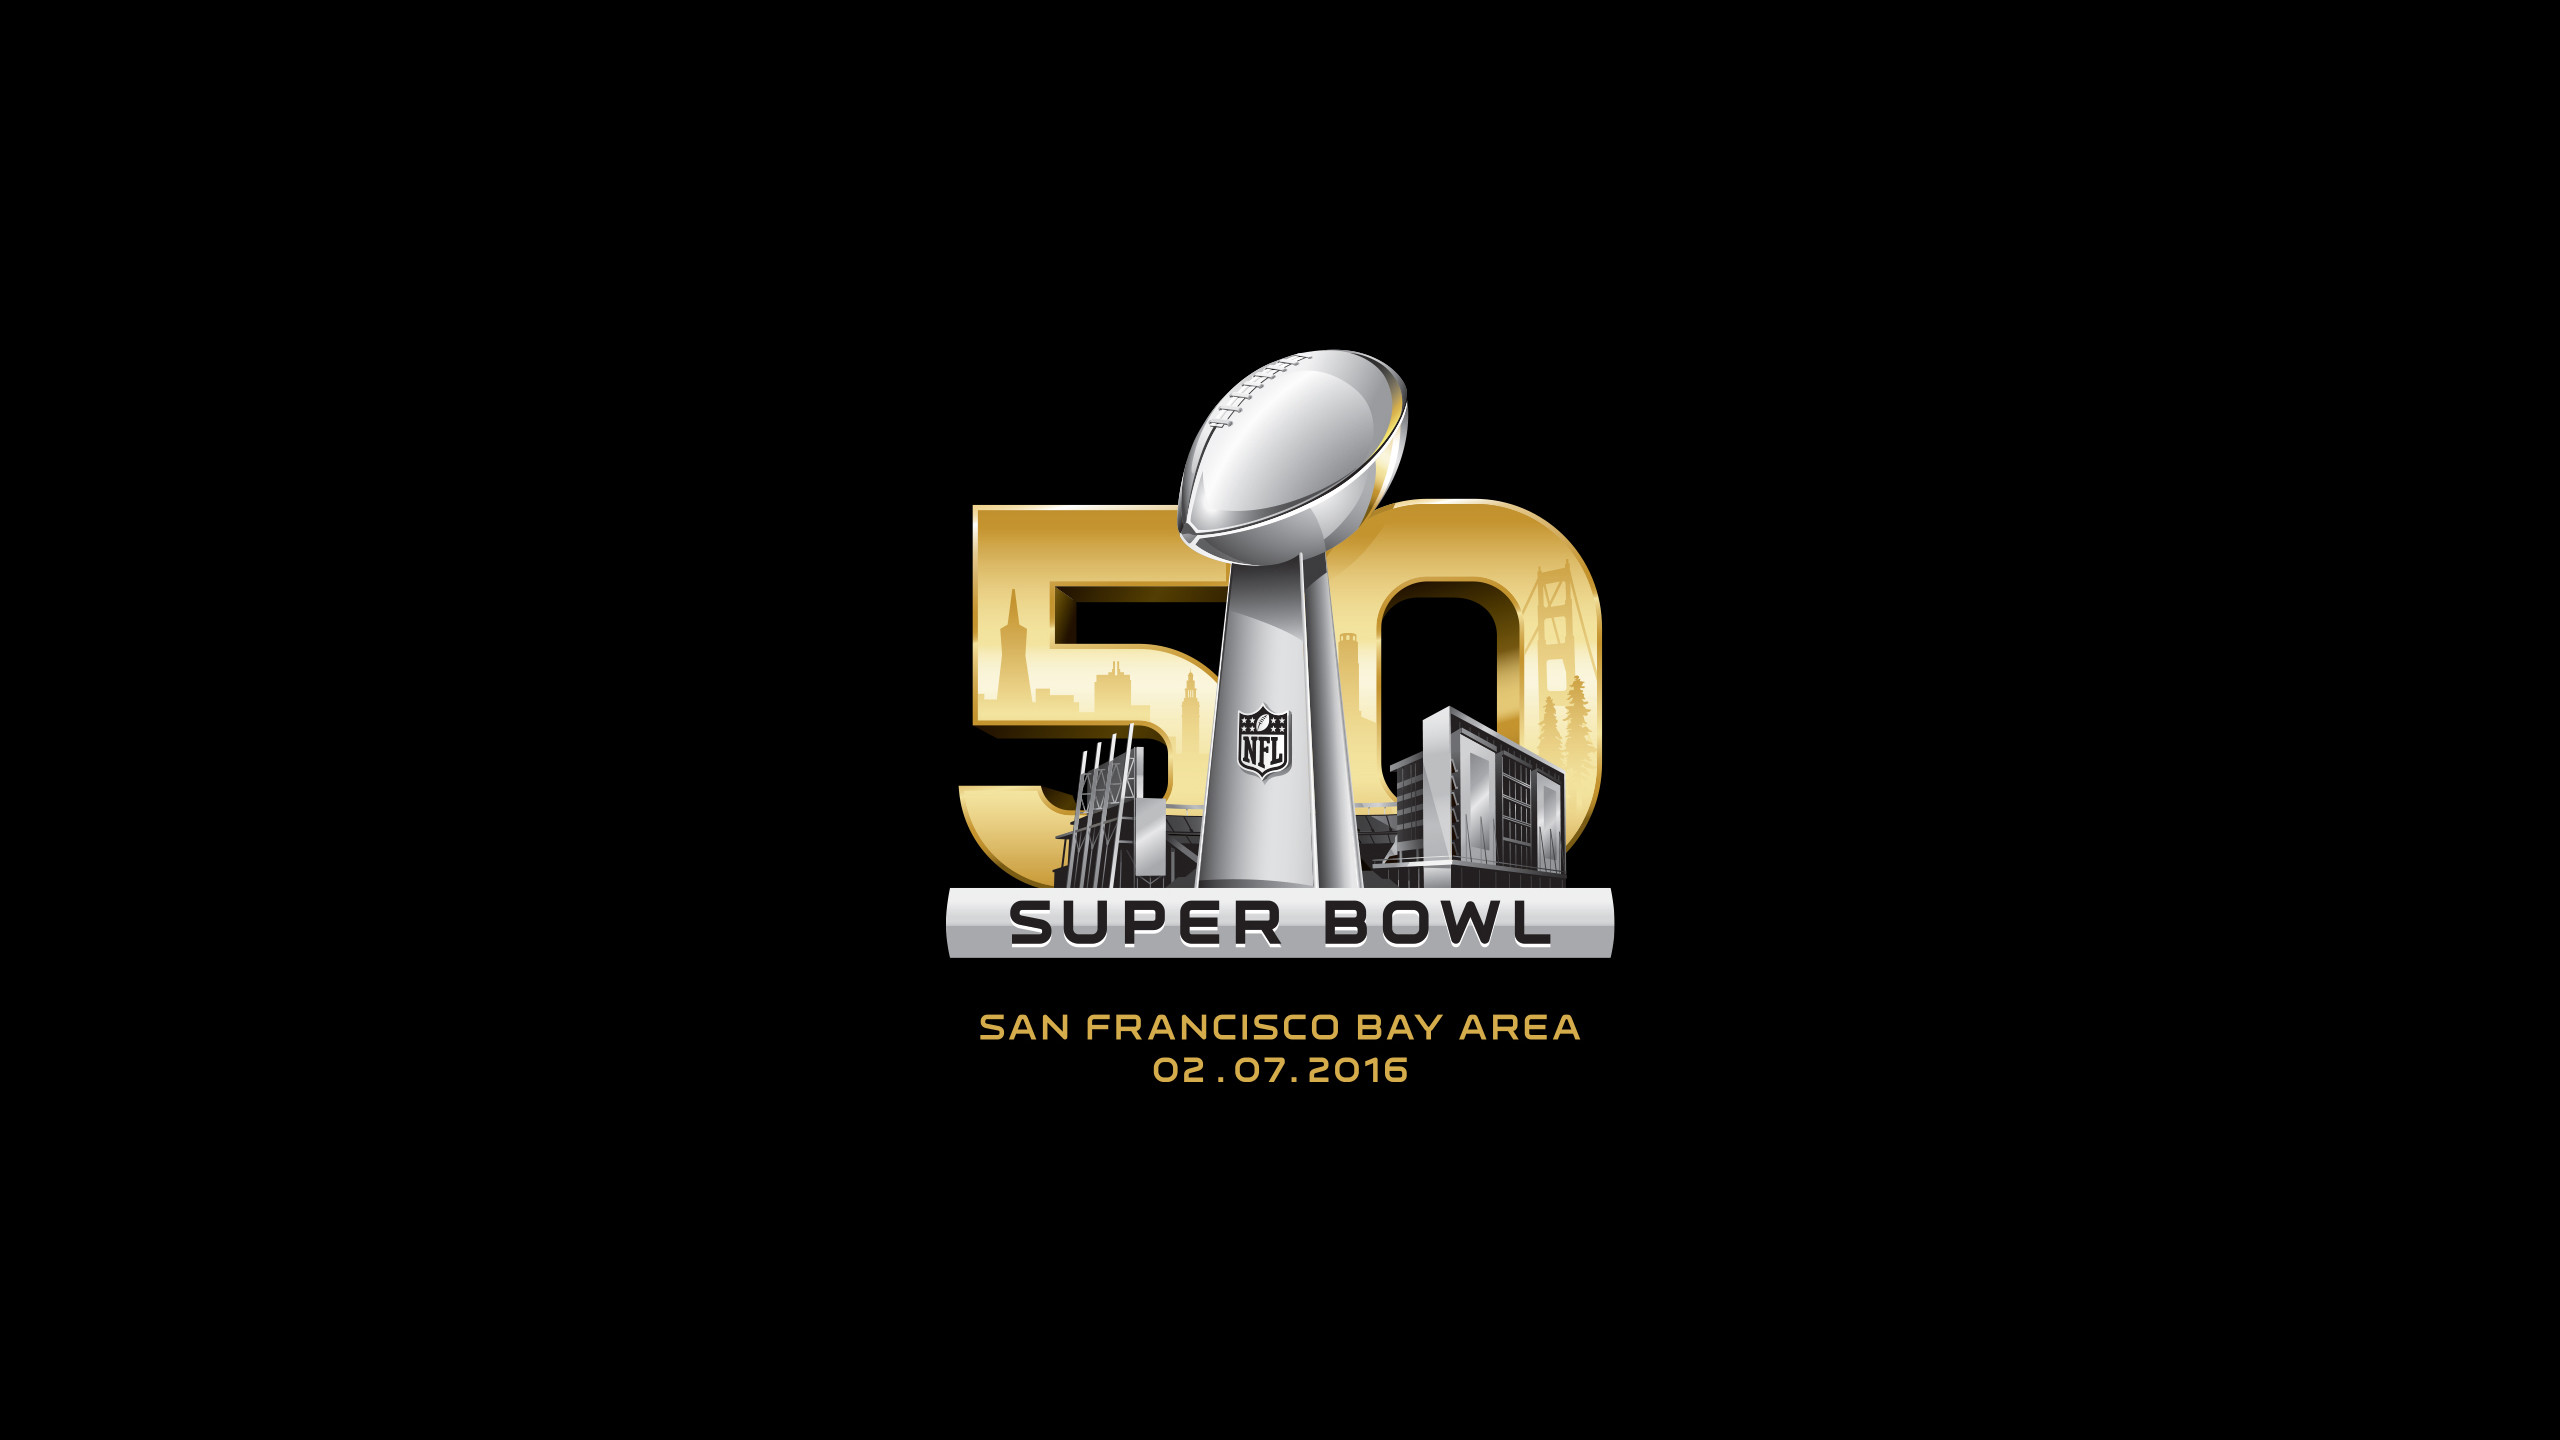 2560x1440 Super Bowl 50 desktop wallpaper Â· Denver Broncos ...